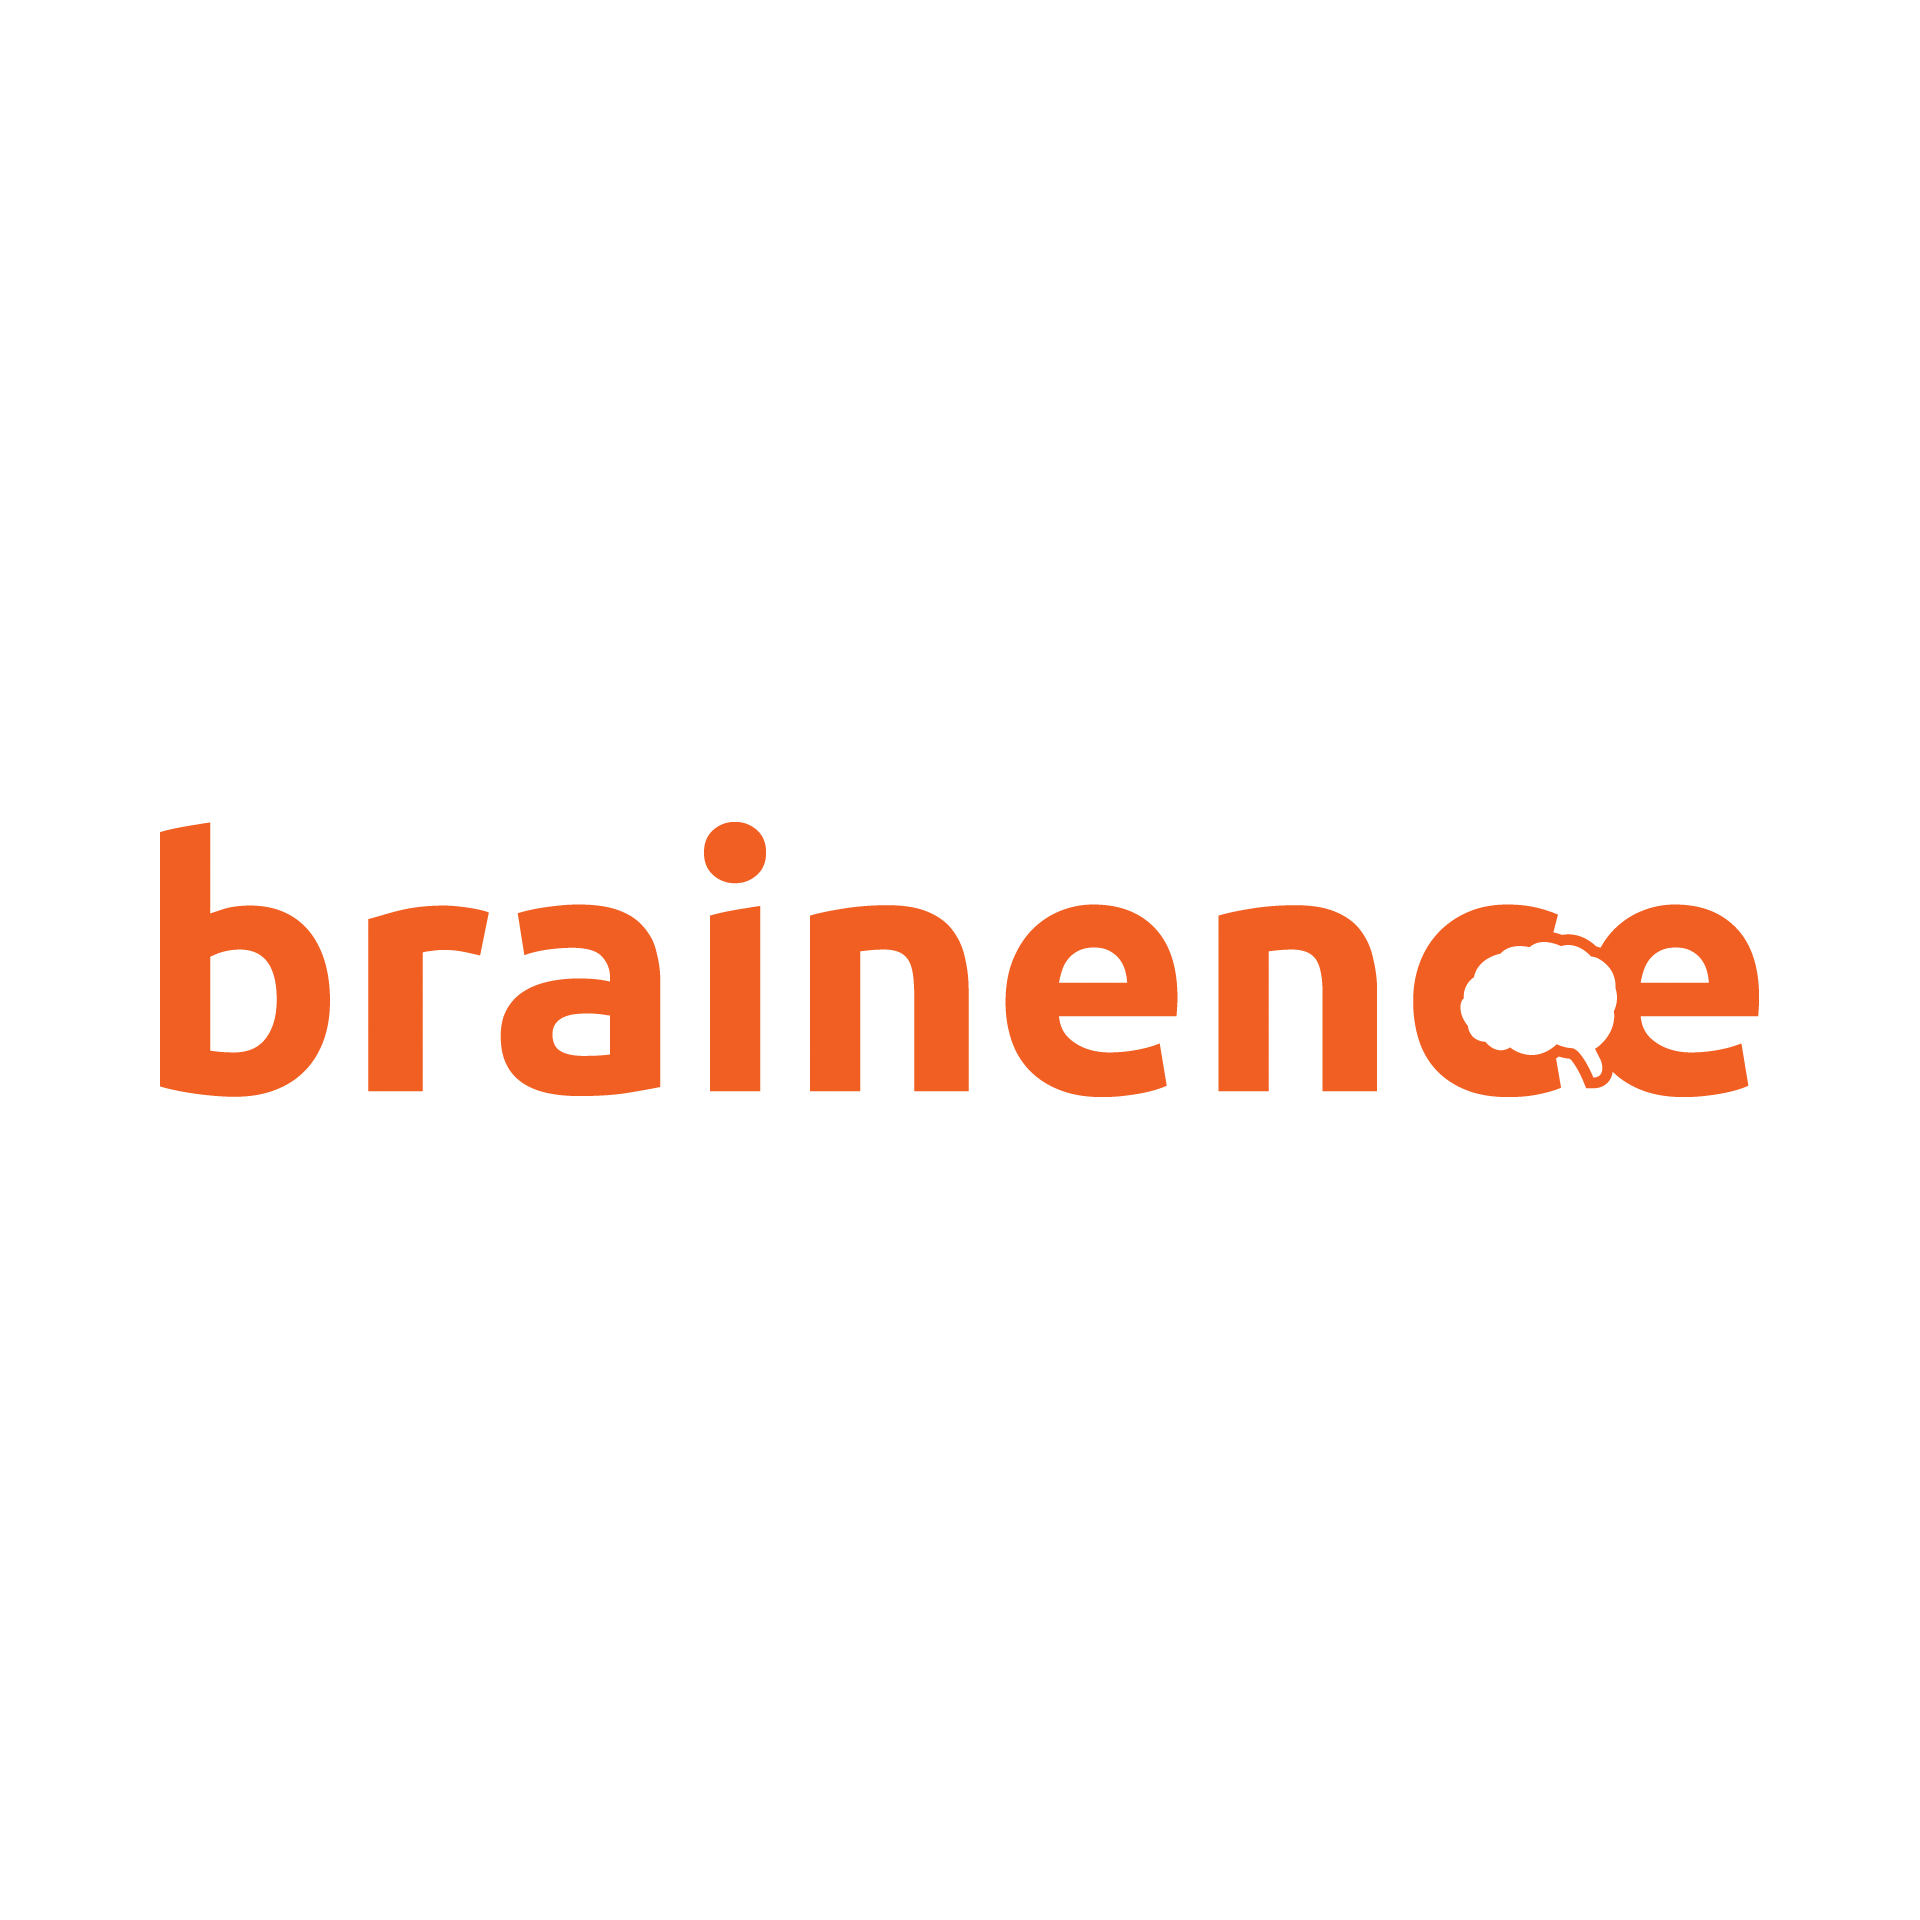 Brainence company logo